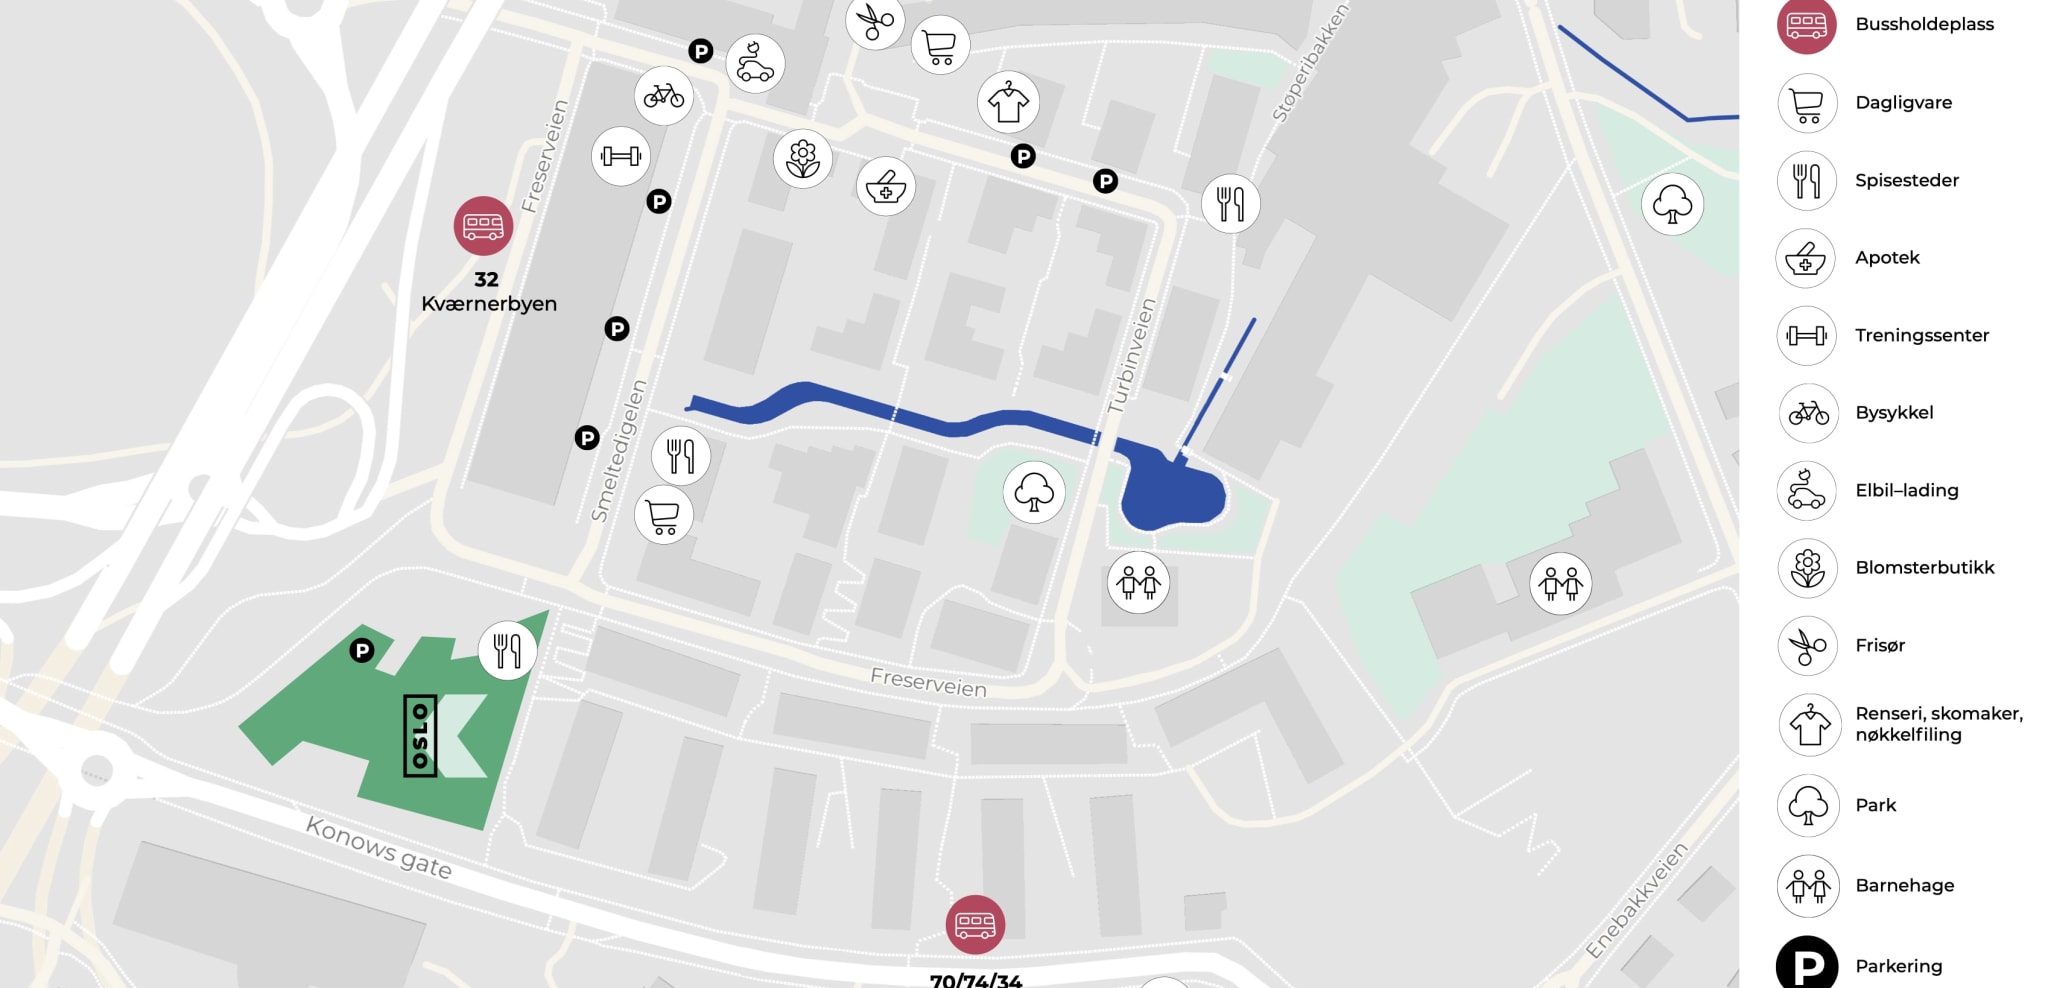 Butikker, kafeer og tjenester er enkelt tilgjengelig i Kværnerbyen. Oslo K ligger på hjørnetomten nederst til venstre i kartet. 